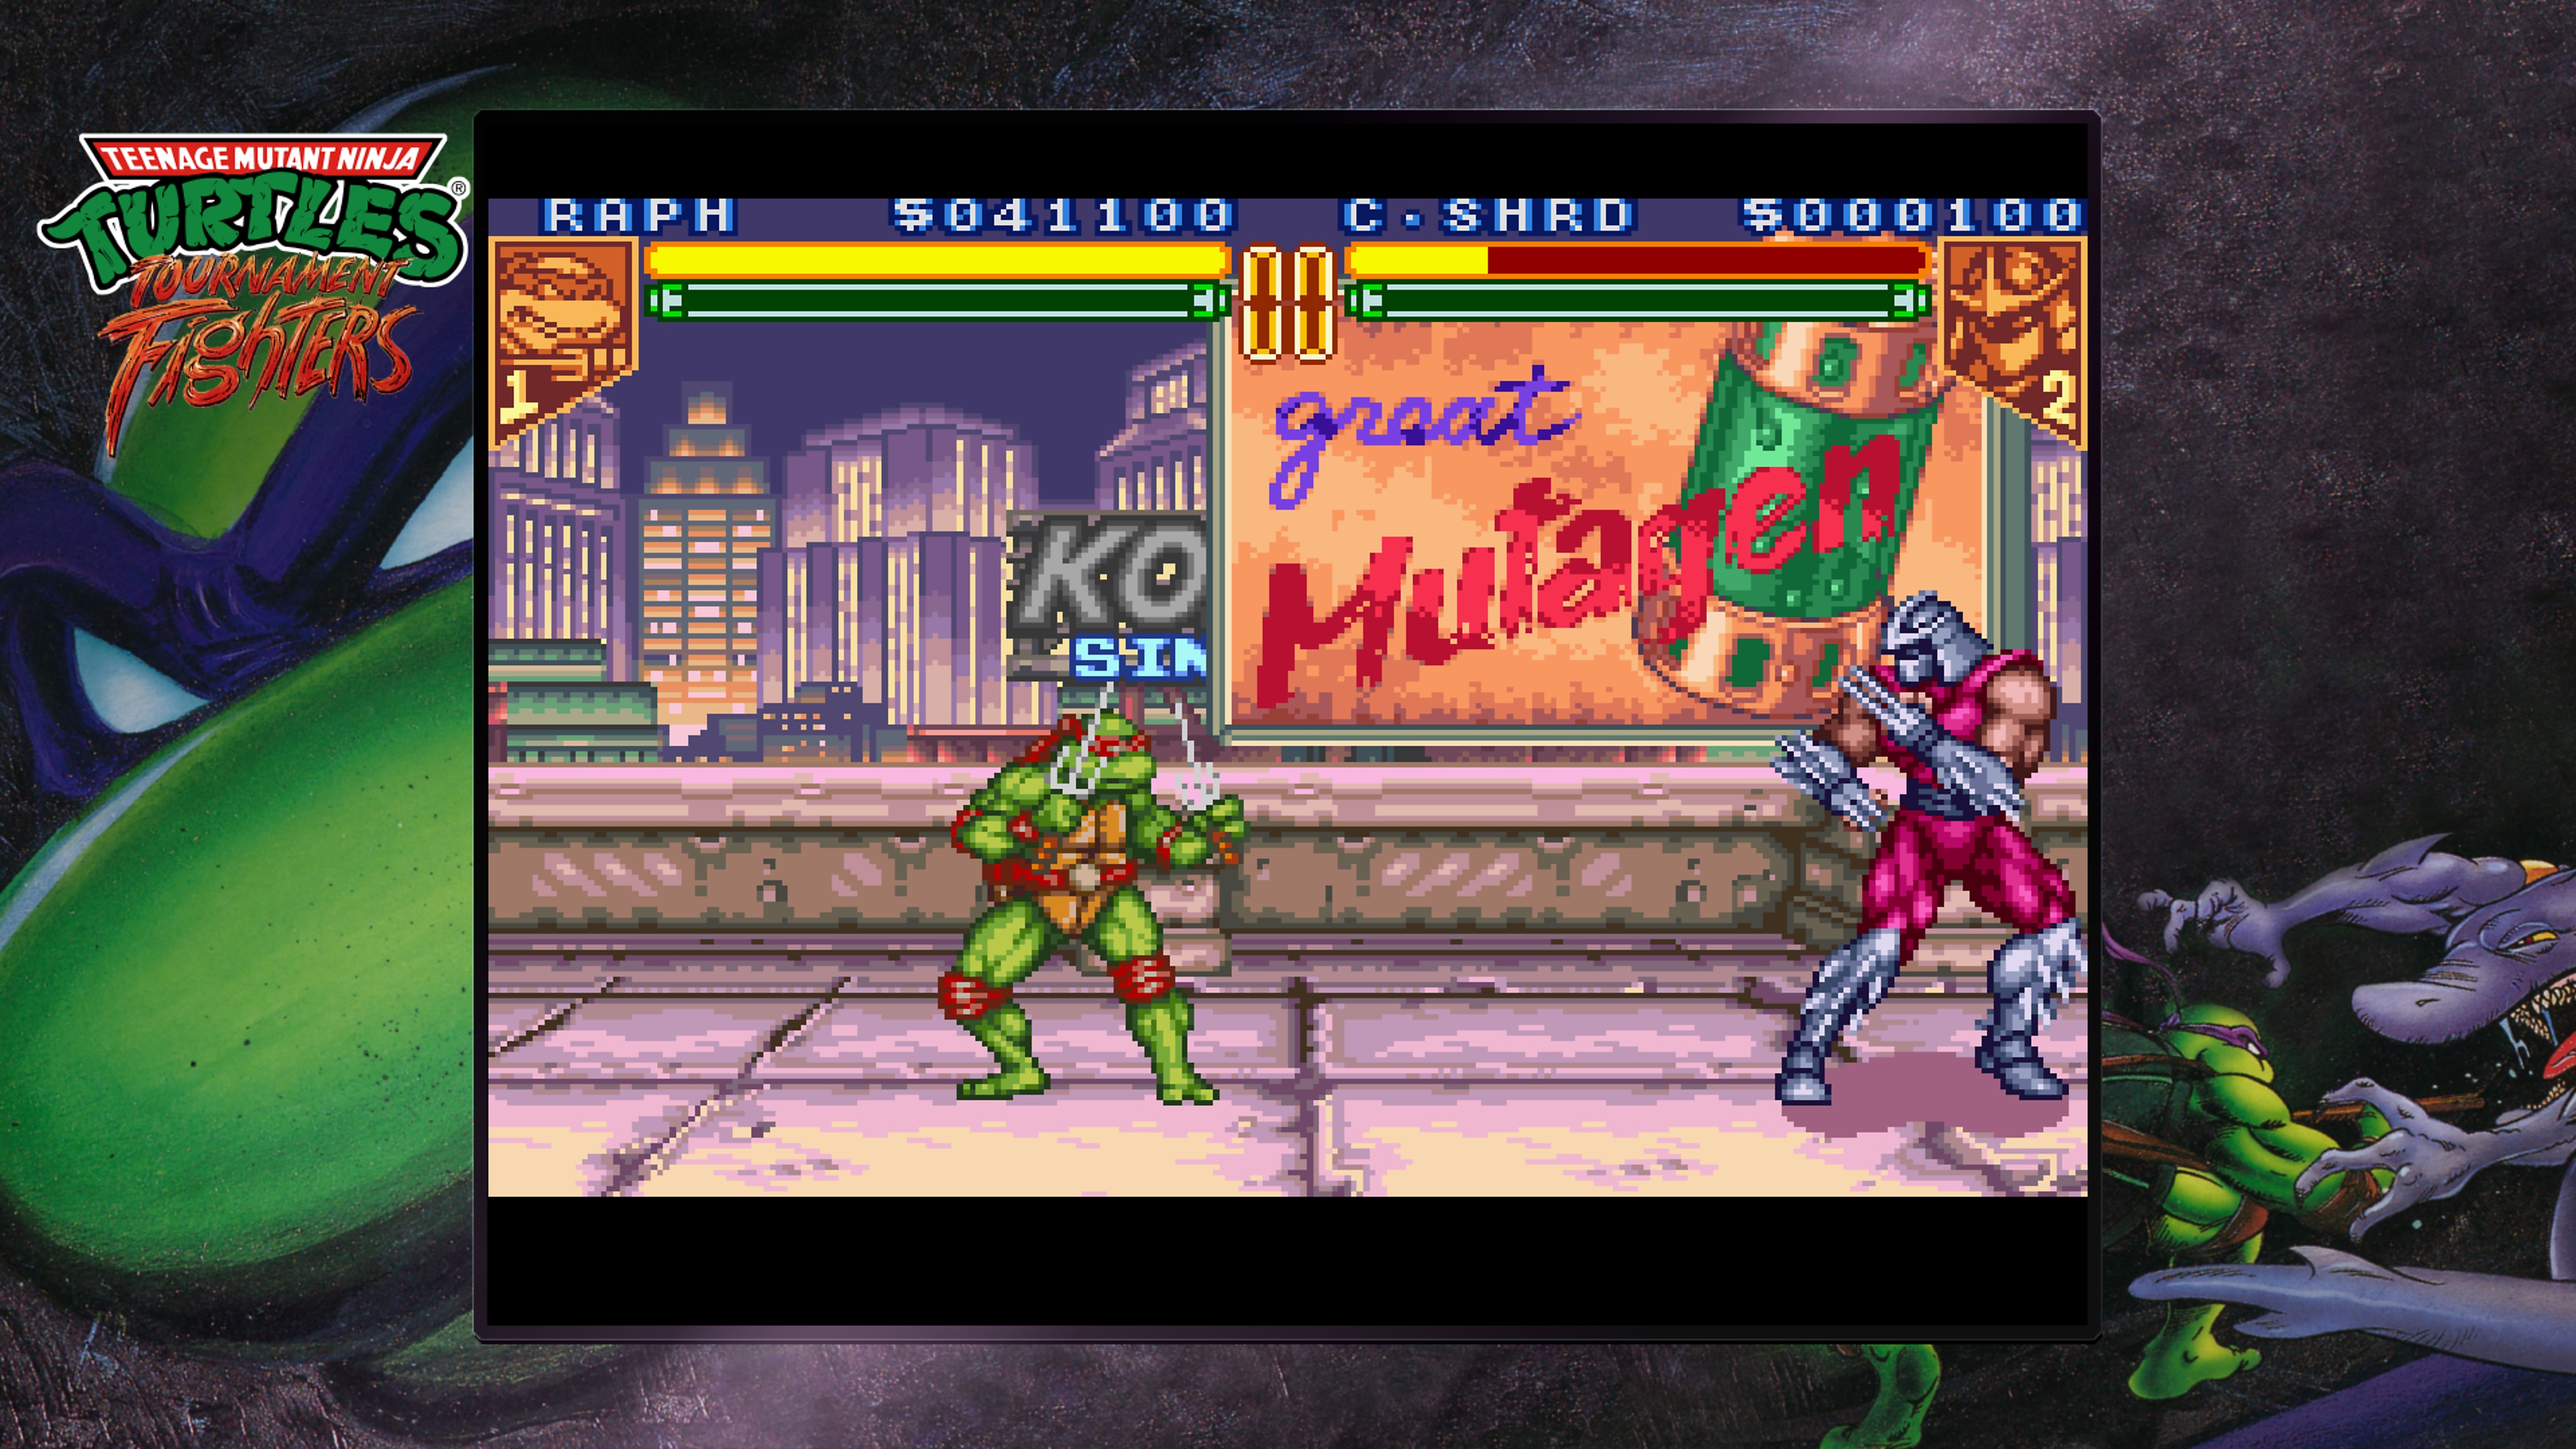 Teenage Mutant Ninja Turtles Collection - Tournament Fighters -kuvakaappaus: Raphael ja Silppuri katolla